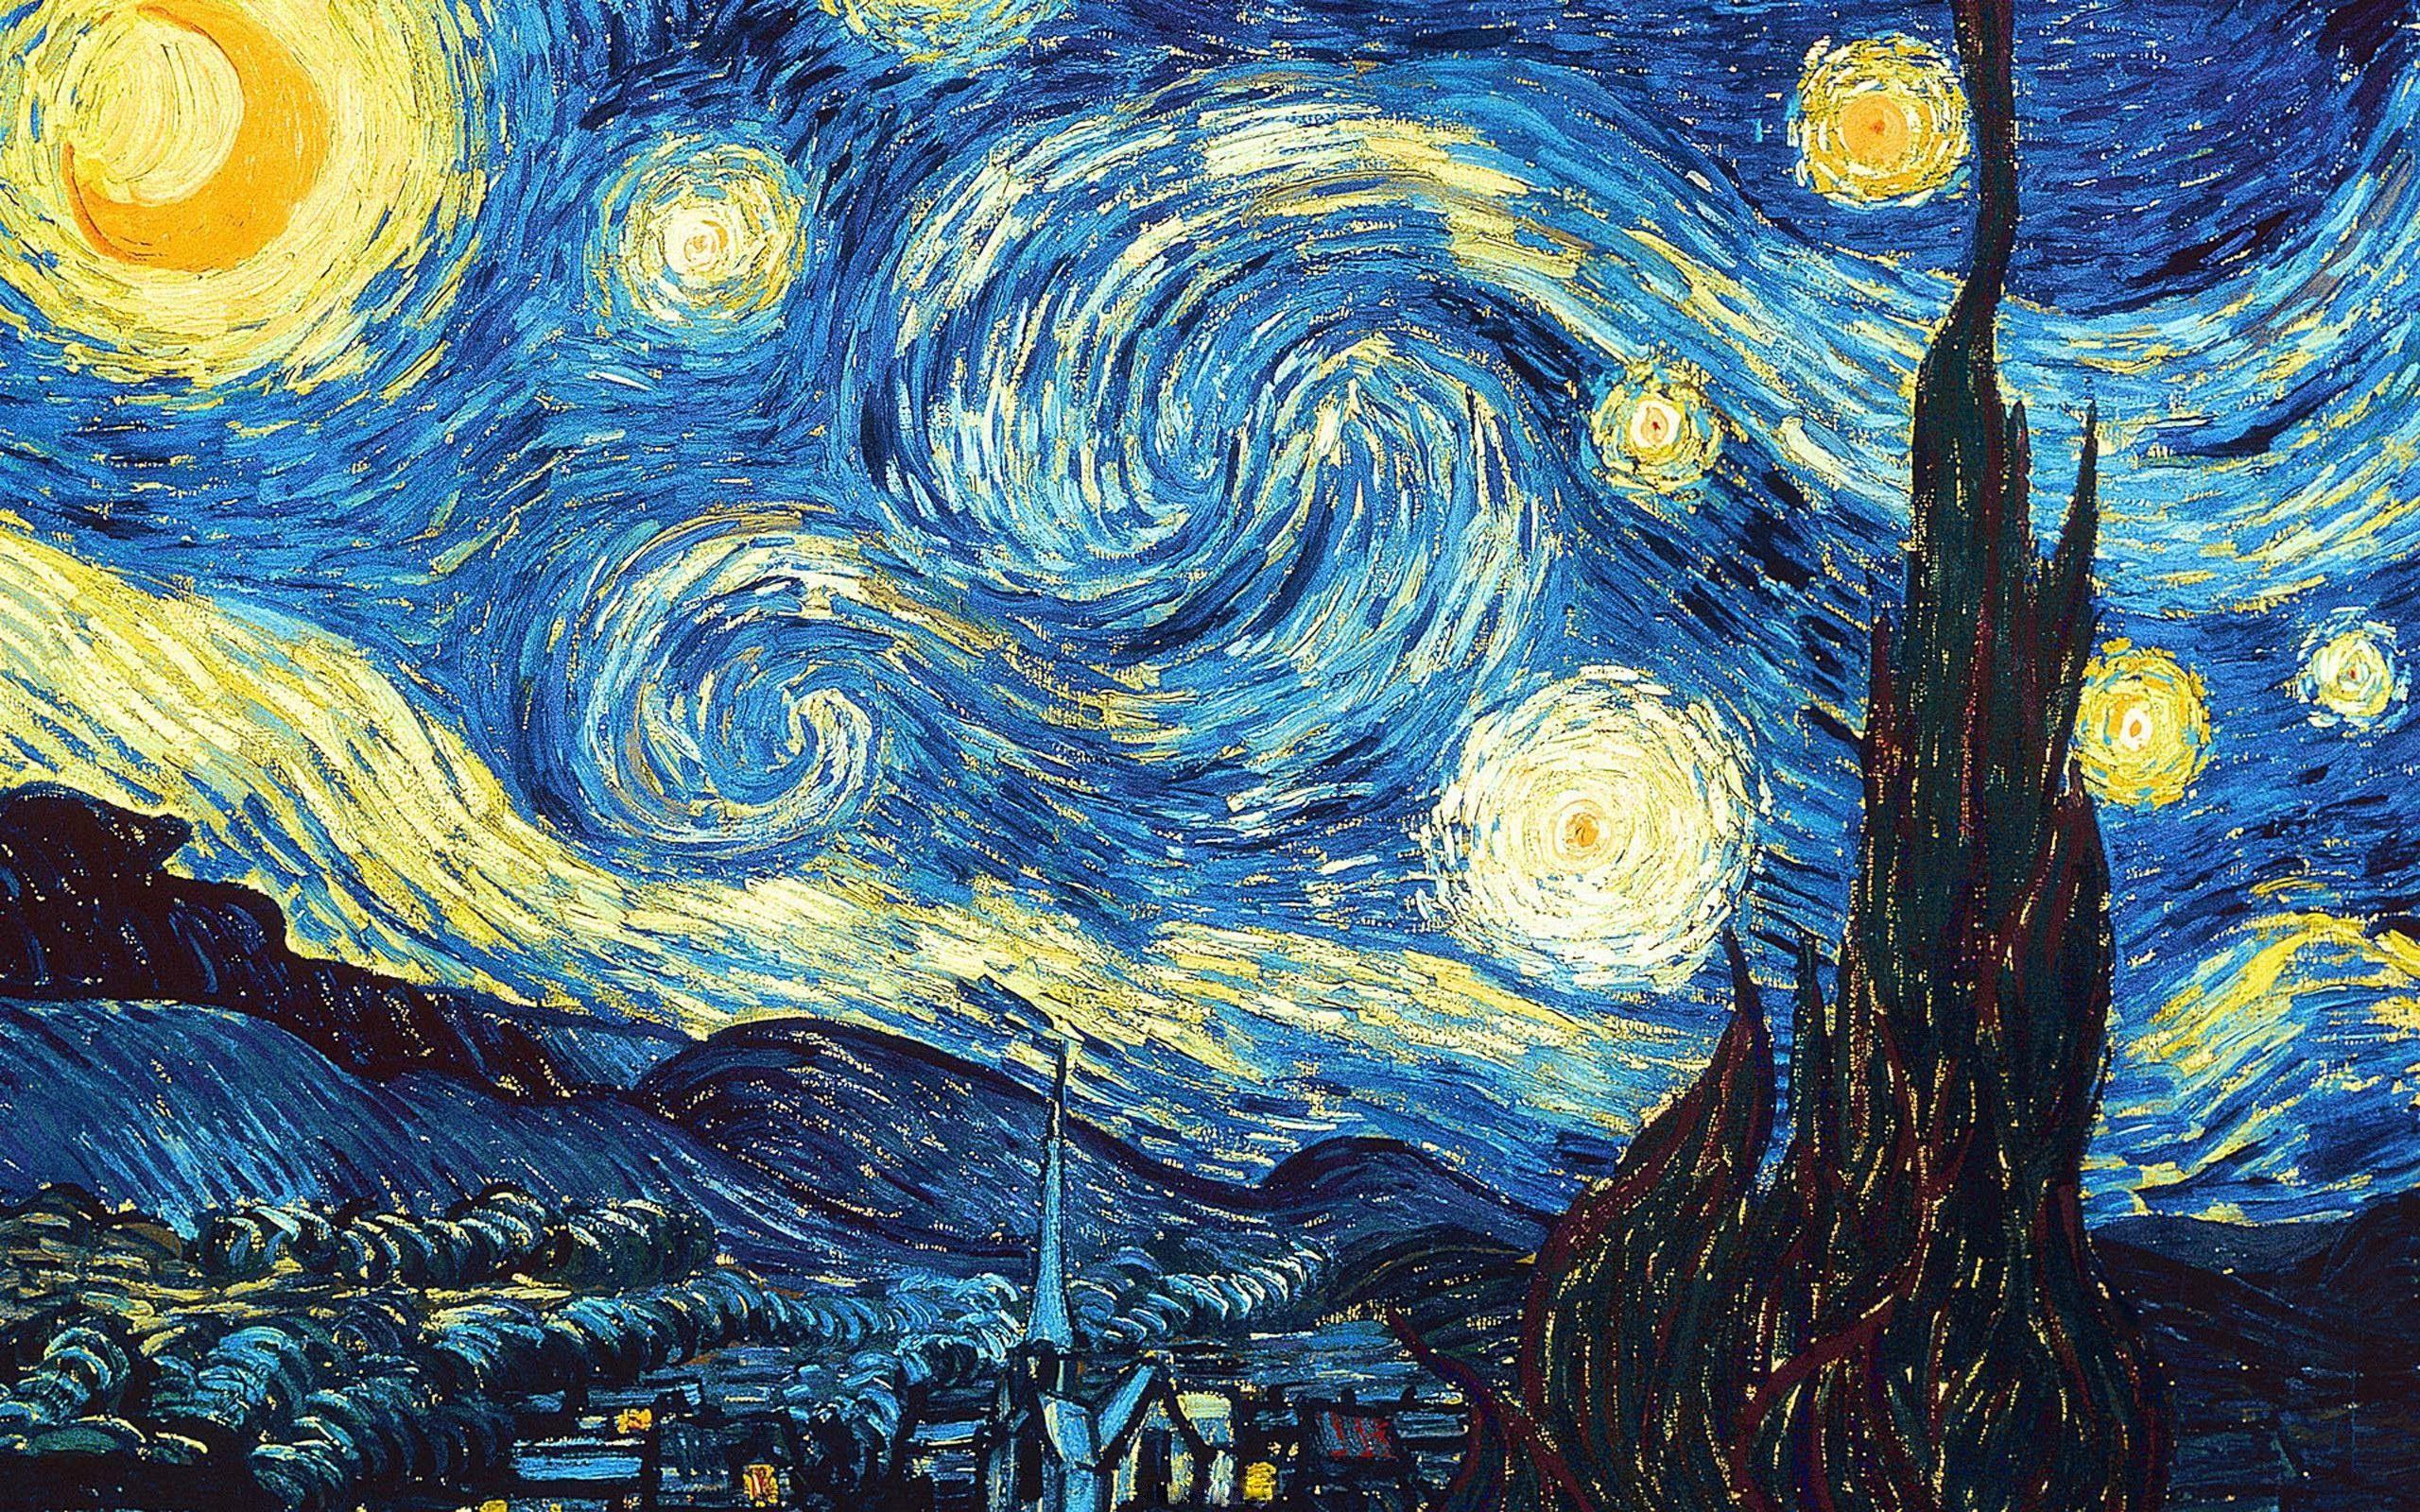 Hình nền đẹp Van Gogh: Bước vào không gian yên bình và đầy màu sắc của nghệ thuật với hình nền đẹp Van Gogh này. Với những bức tranh tuyệt đẹp và phong phú, bạn sẽ không những tận hưởng không gian làm việc hay học tập đầy màu sắc mà còn cả những giây phút thư giãn không thể quên!